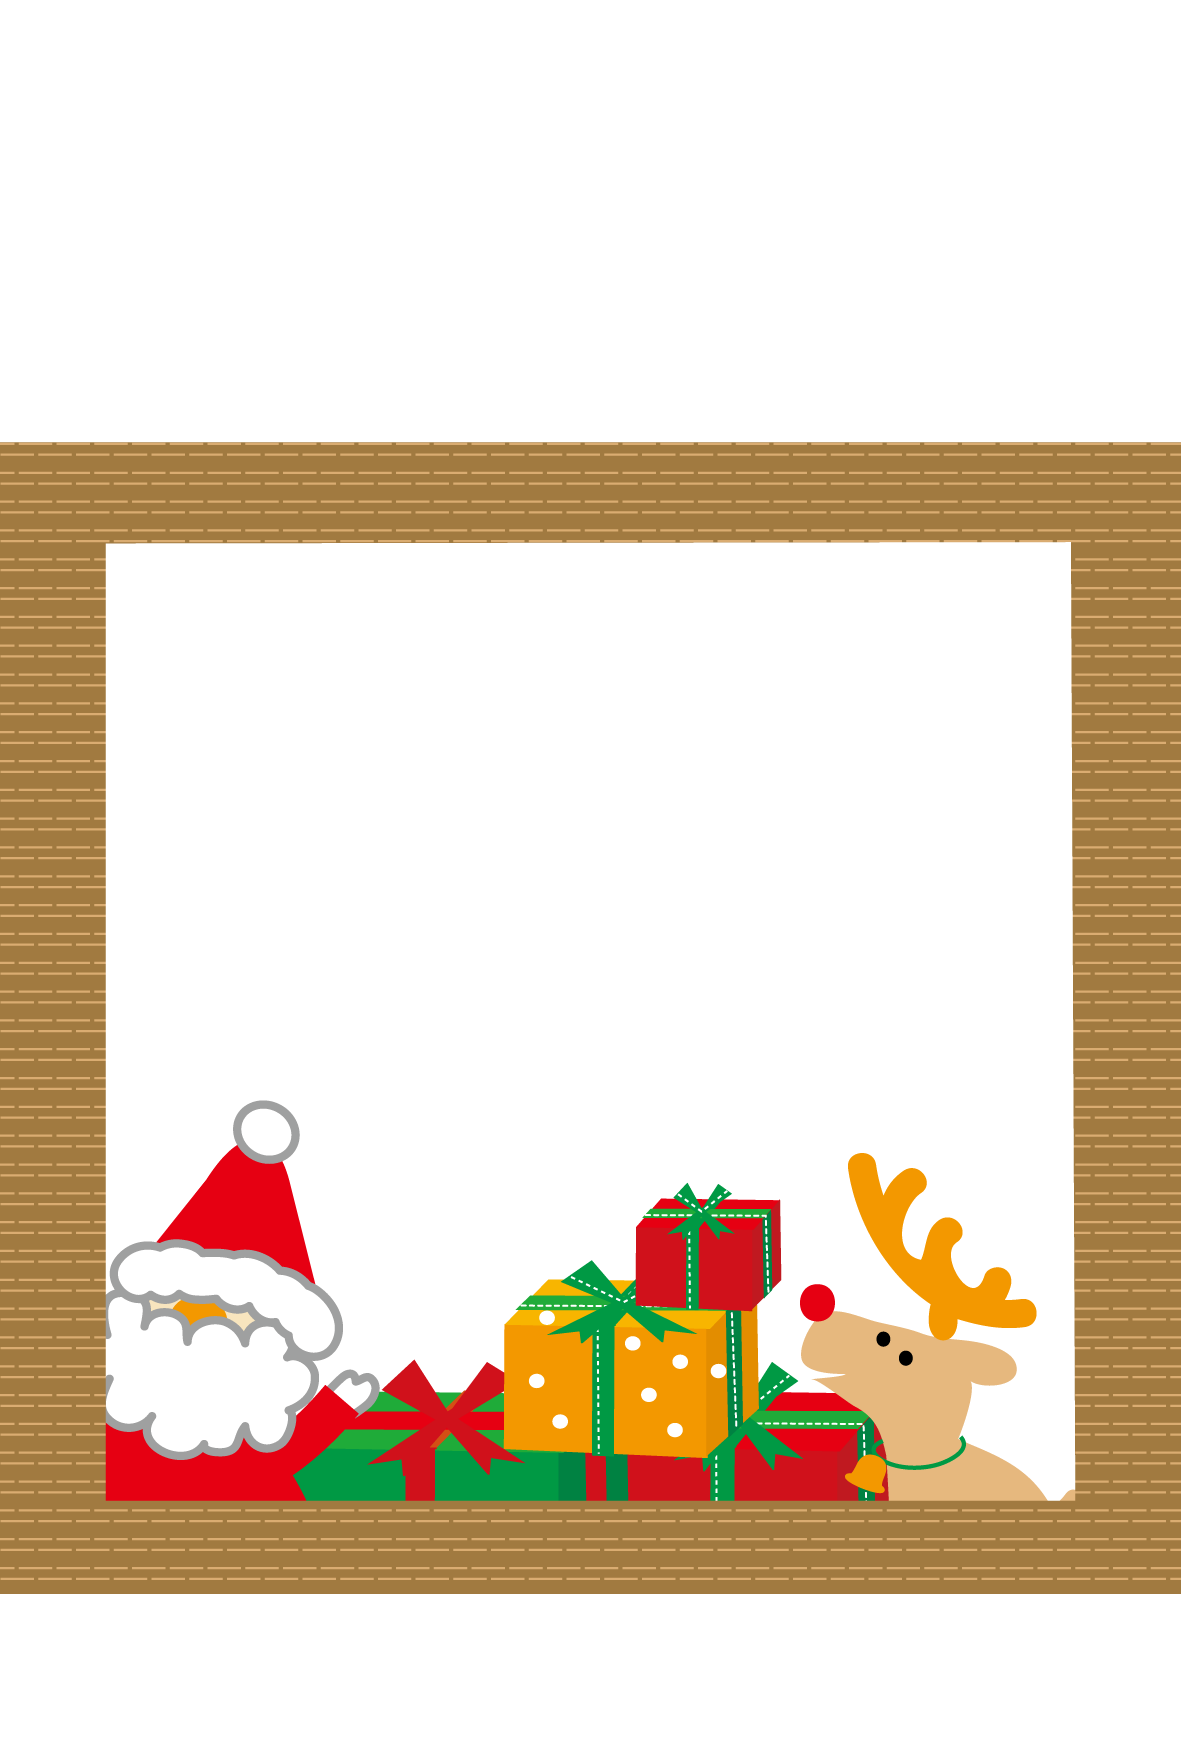 クリスマスカード 写真フレーム 無料素材